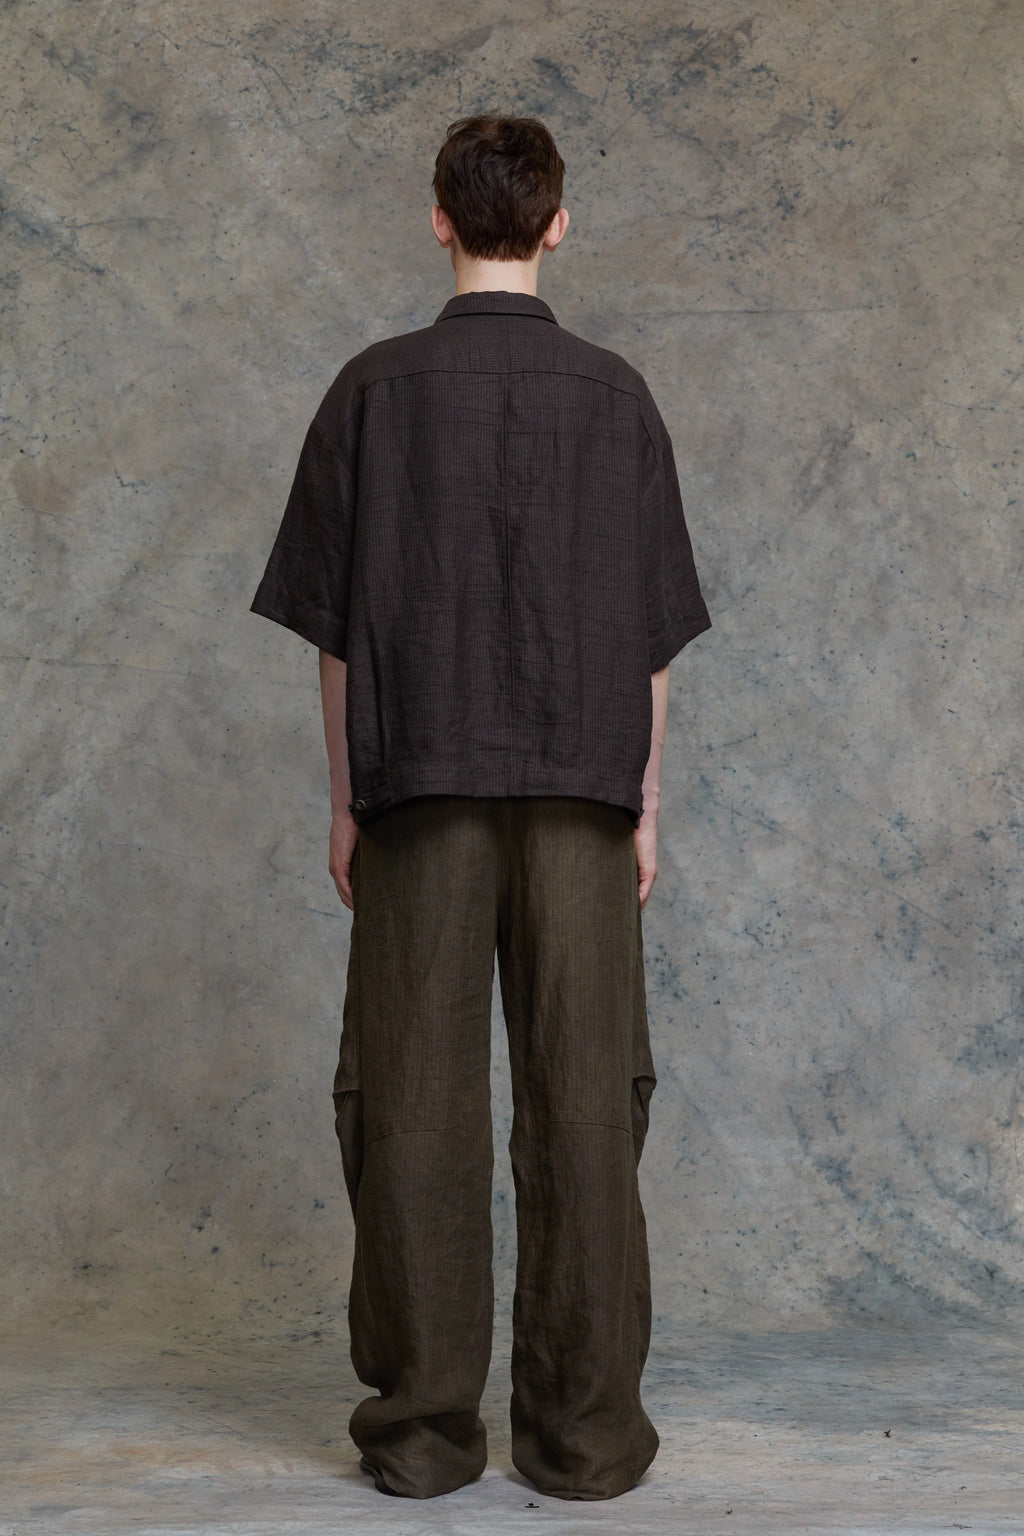 ZIGGY CHEN Men Oversized Short Sleeve Workers Shirt